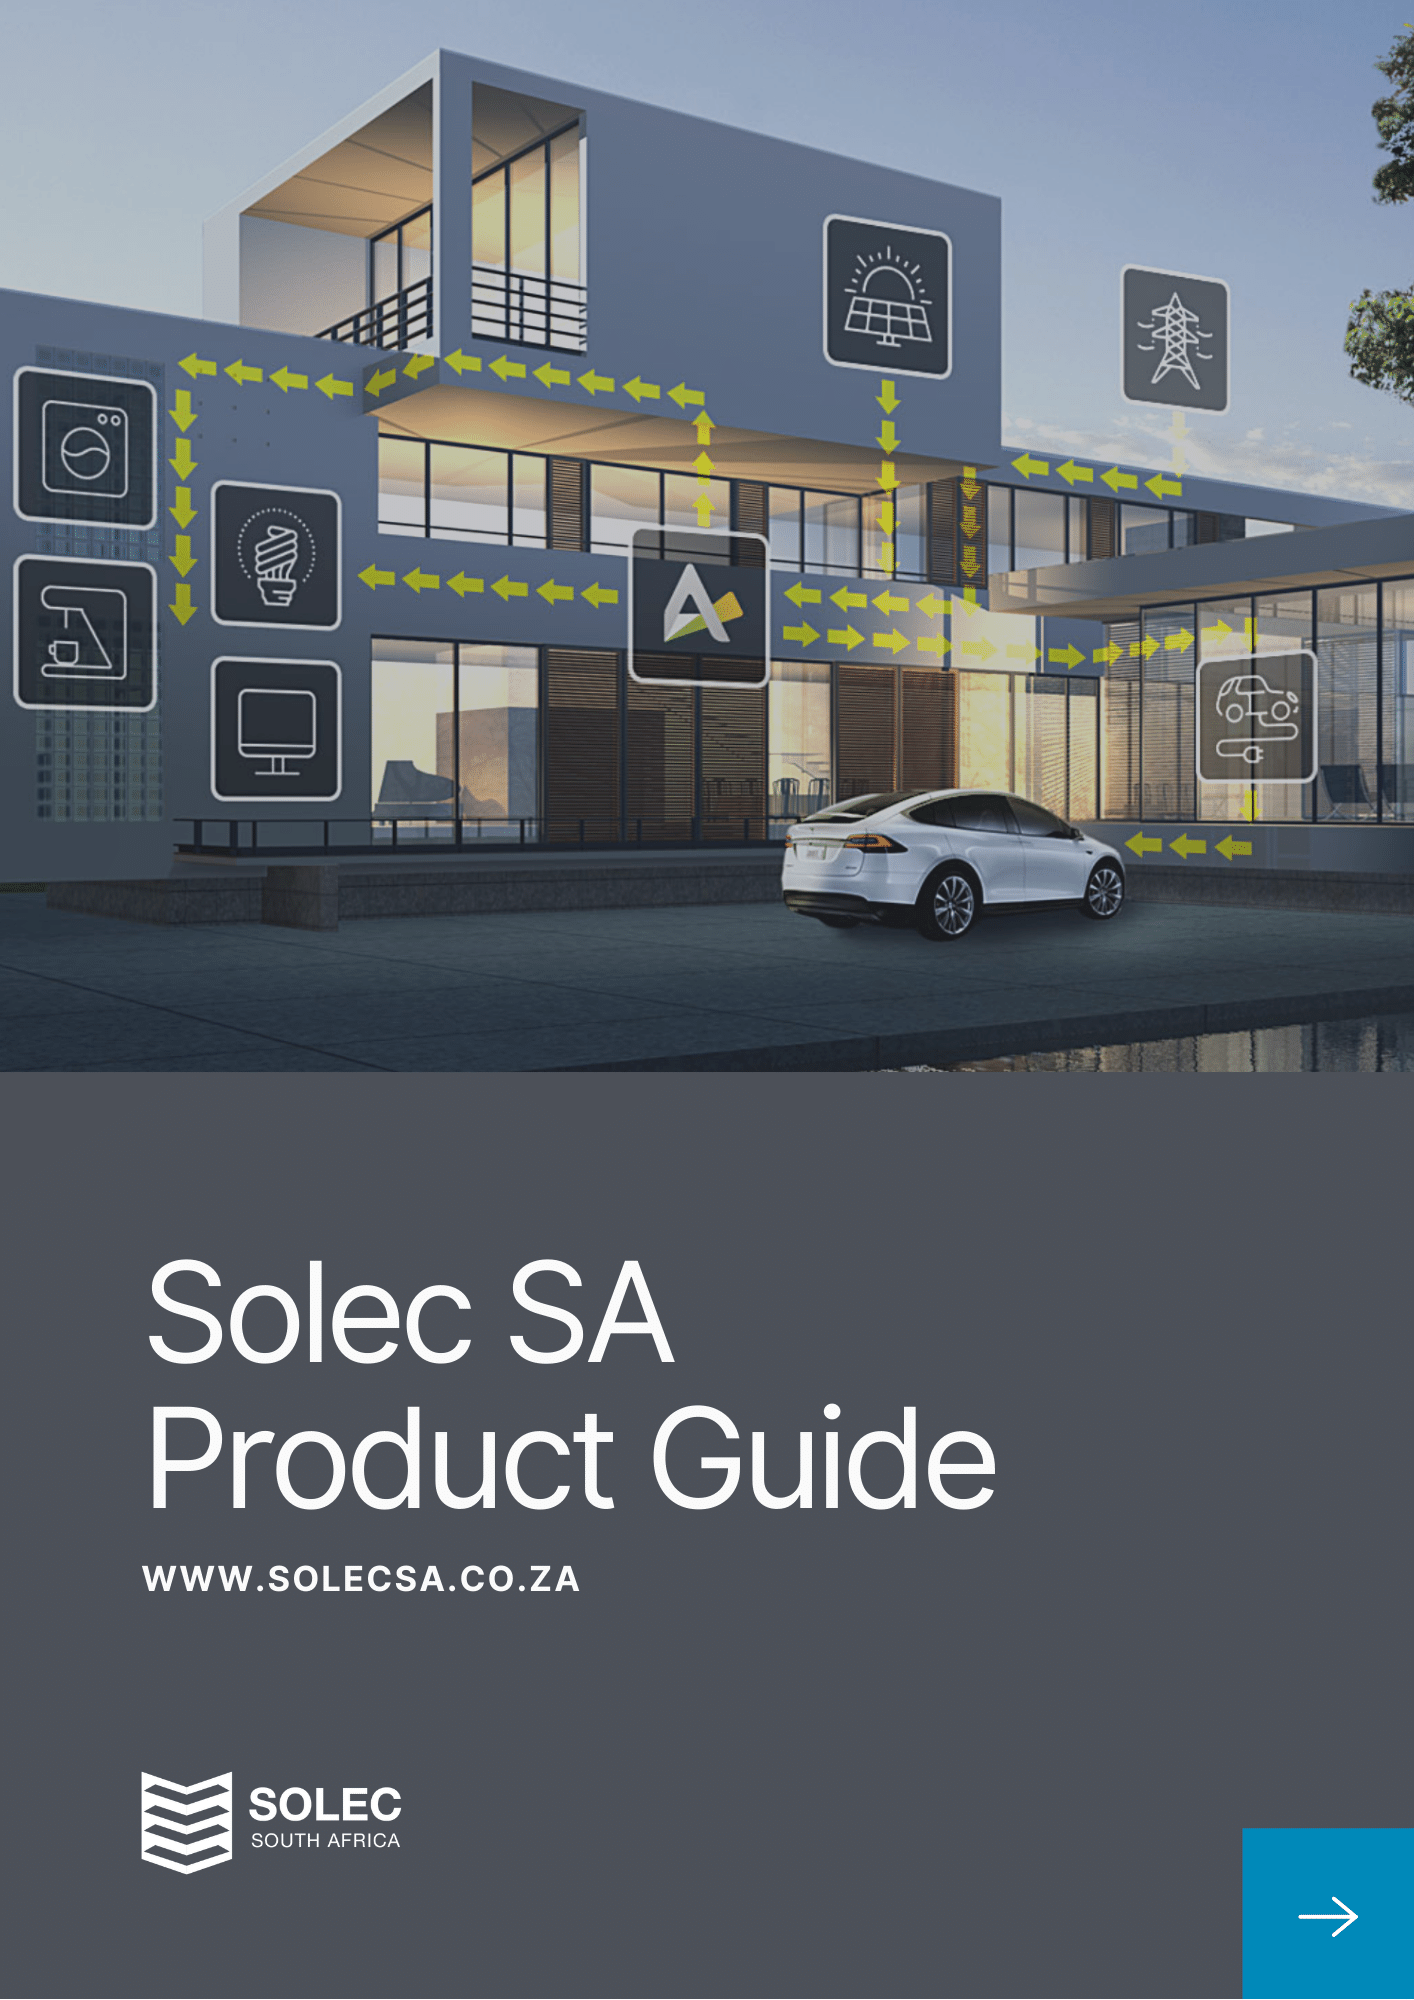 Copy of SOLEC SA Product Presentation Design